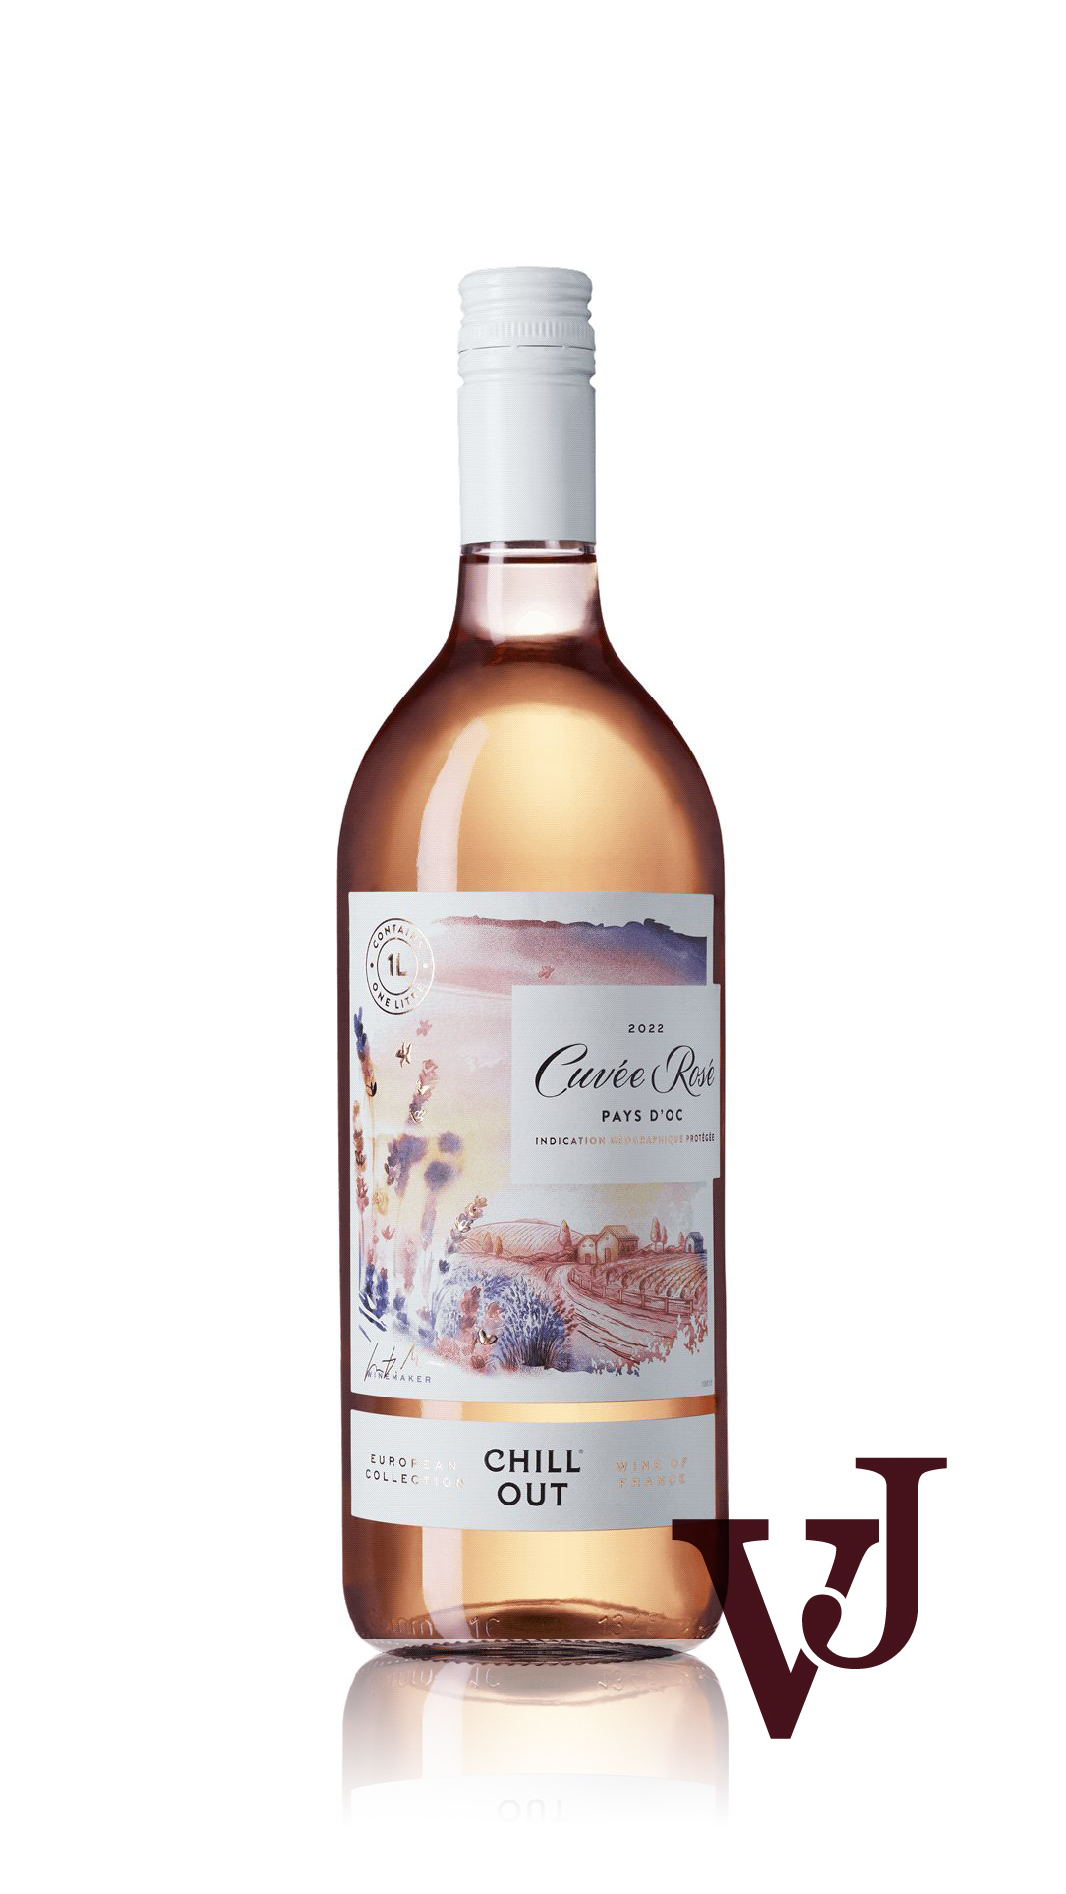 Rosé Vin - CHILL OUT artikel nummer 5638301 från producenten Anora Group PLC från området Frankrike